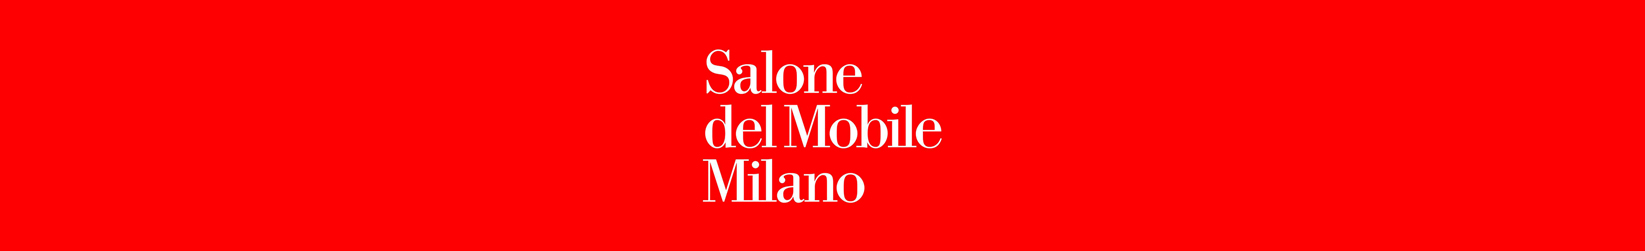 Salone del Mobile Milano Studio Pastina novità